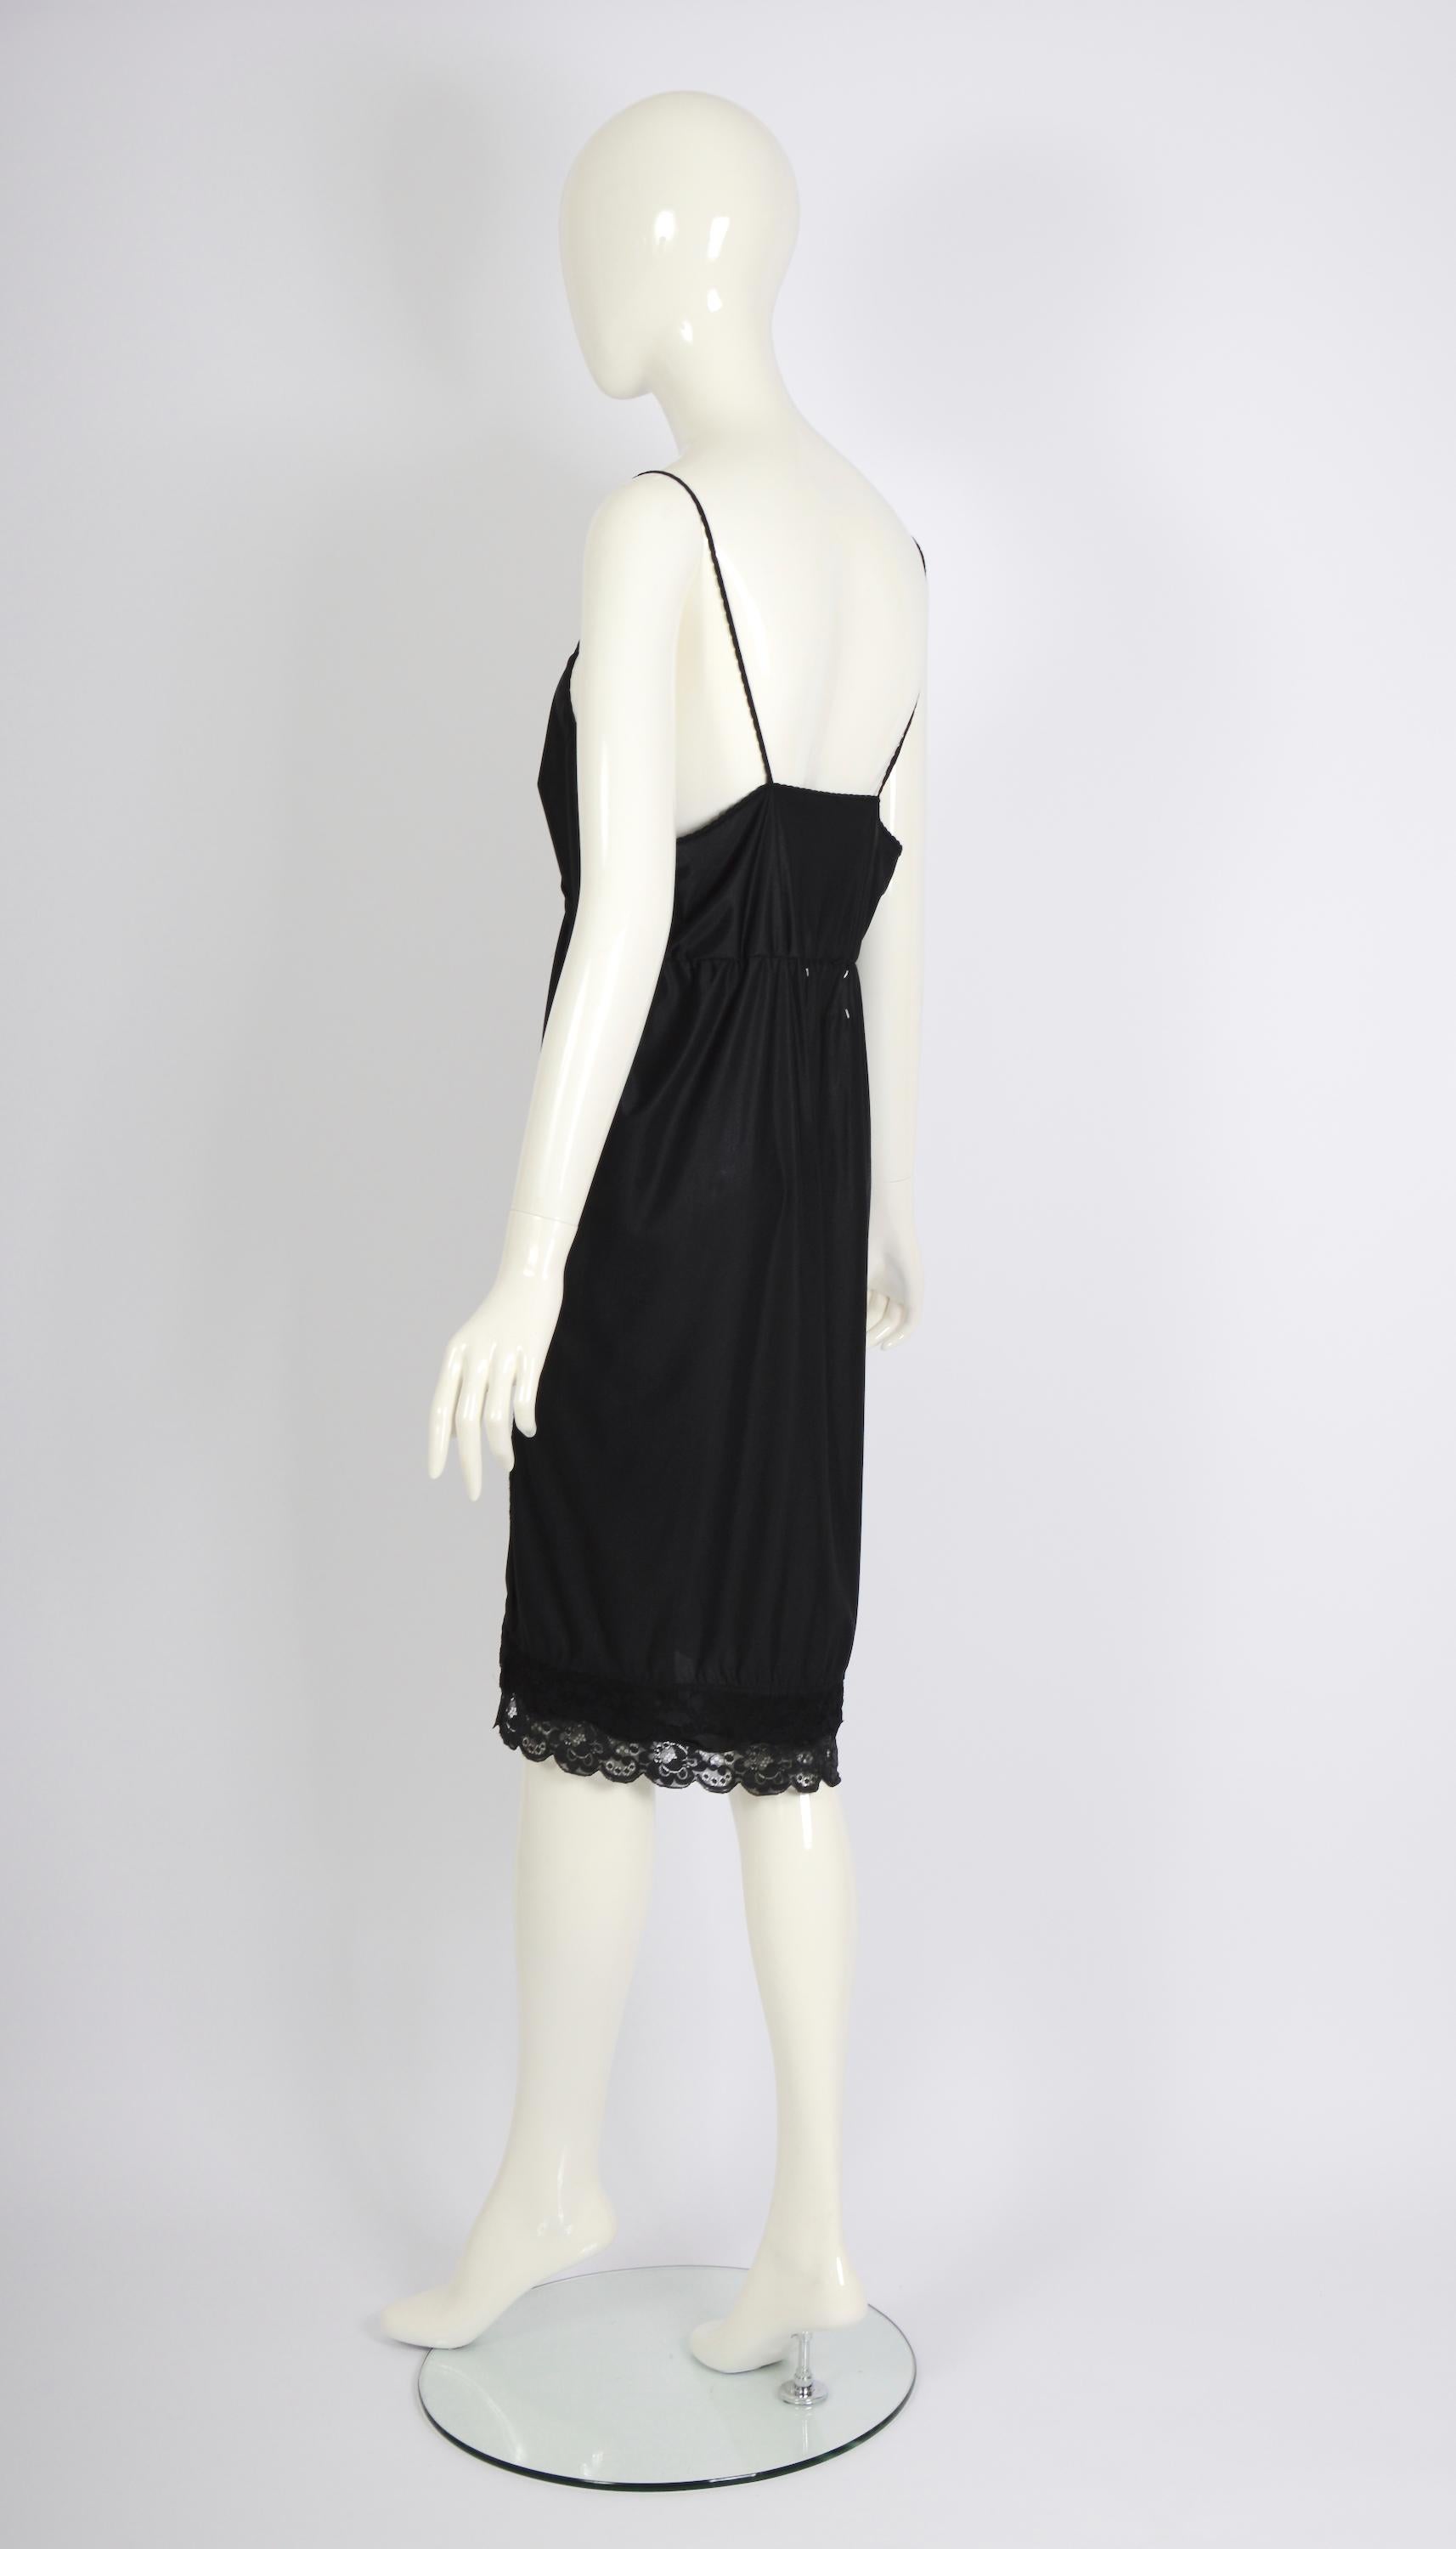 Vintage Martin Margiela artisanal ss 2003 runway black folded dress skirt For Sale 5